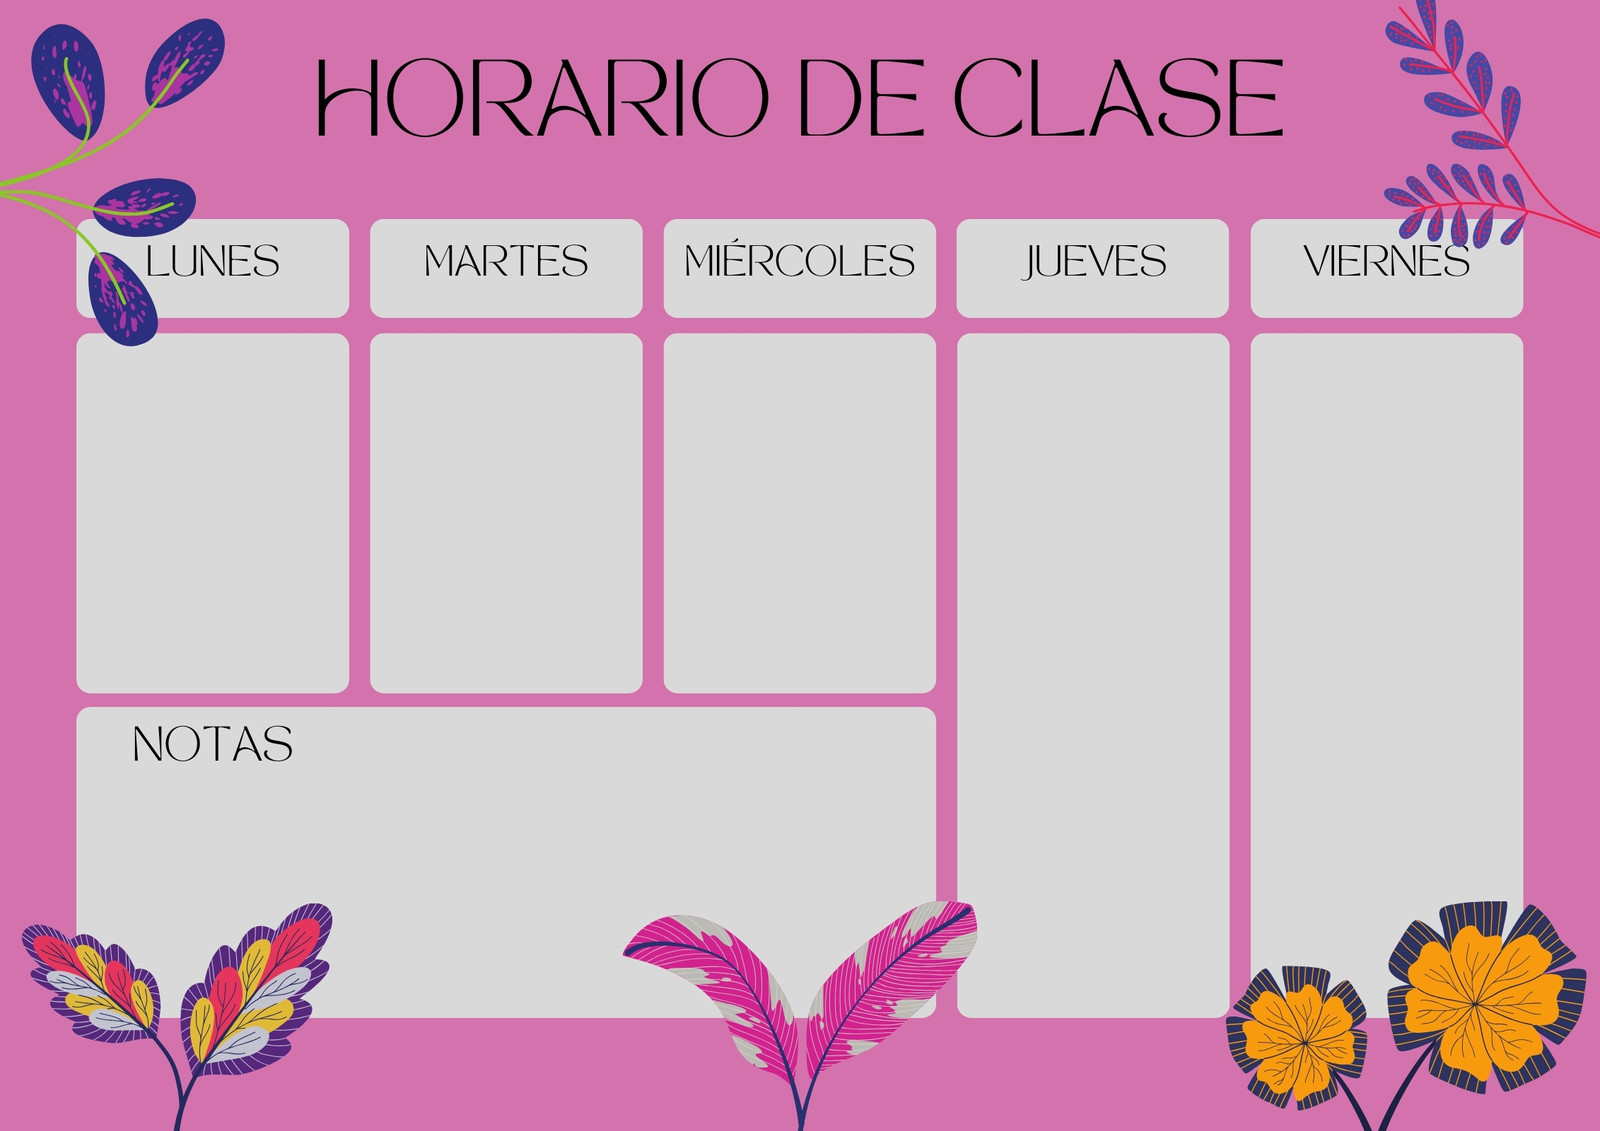 Horario de Clase Floral Divertido Rosa y Gris